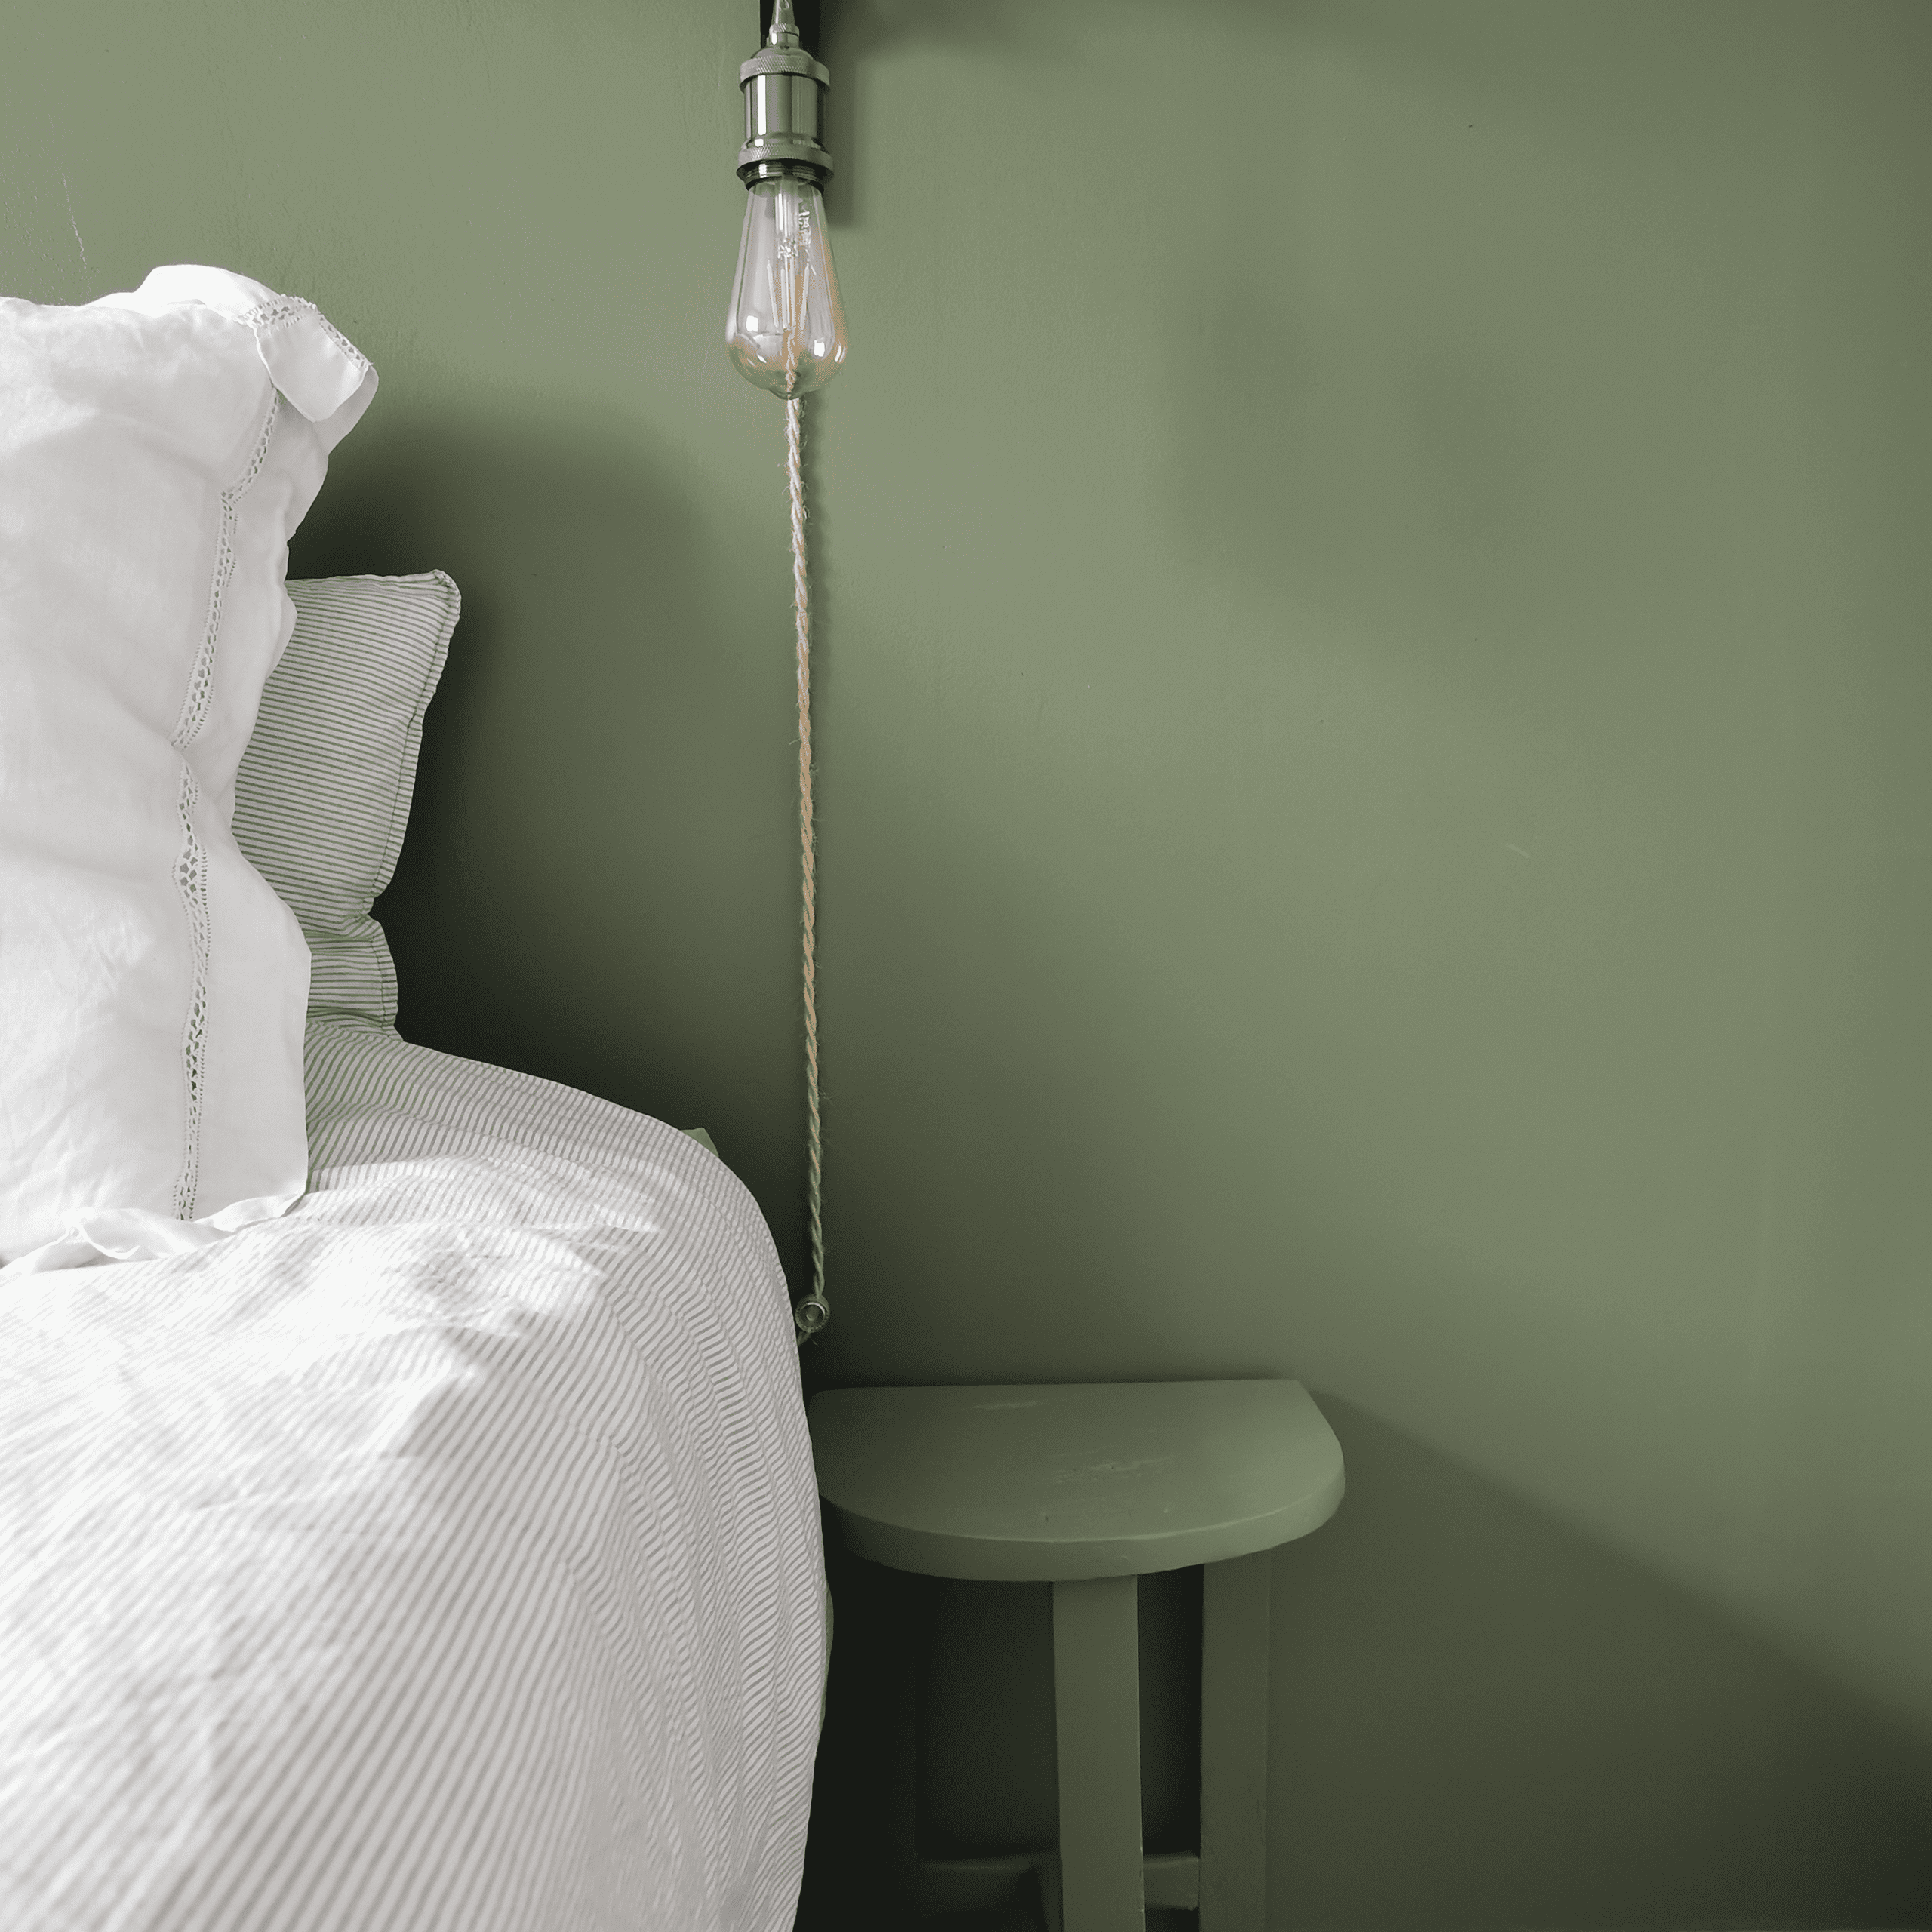 le côté d'un lit avec sa table de chevet assortie au mur de derrière qui est vert kaki